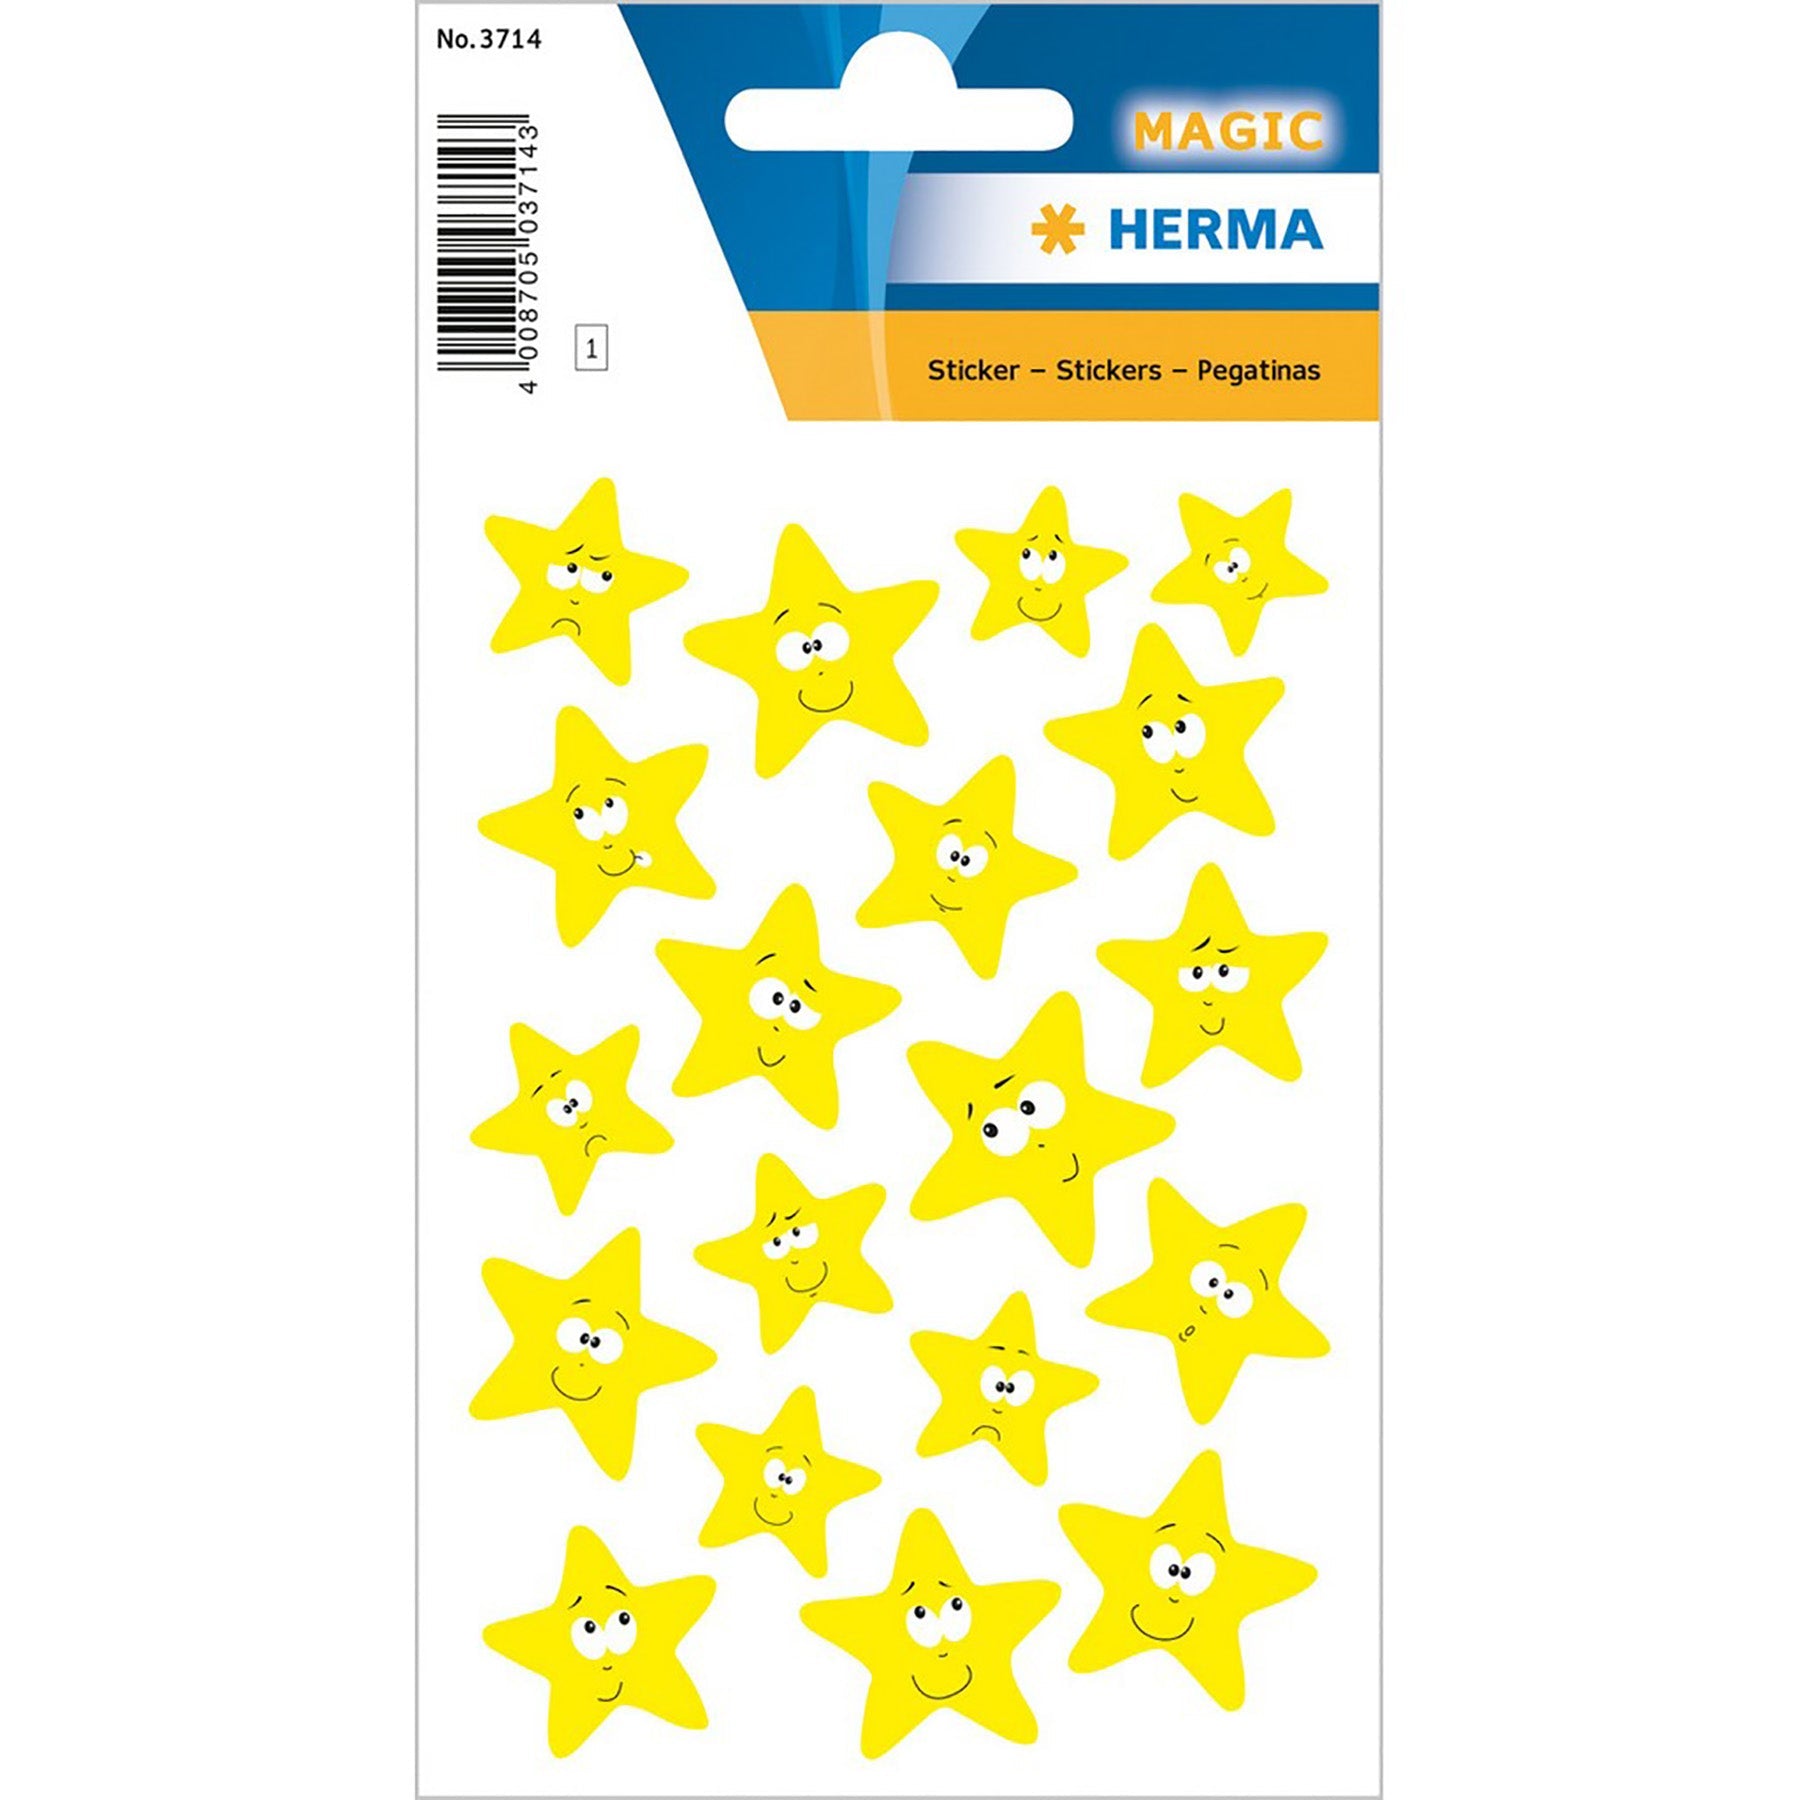 Herma Magic Stickers Stars Luminous Yellow 4.75x3.1in Sheet